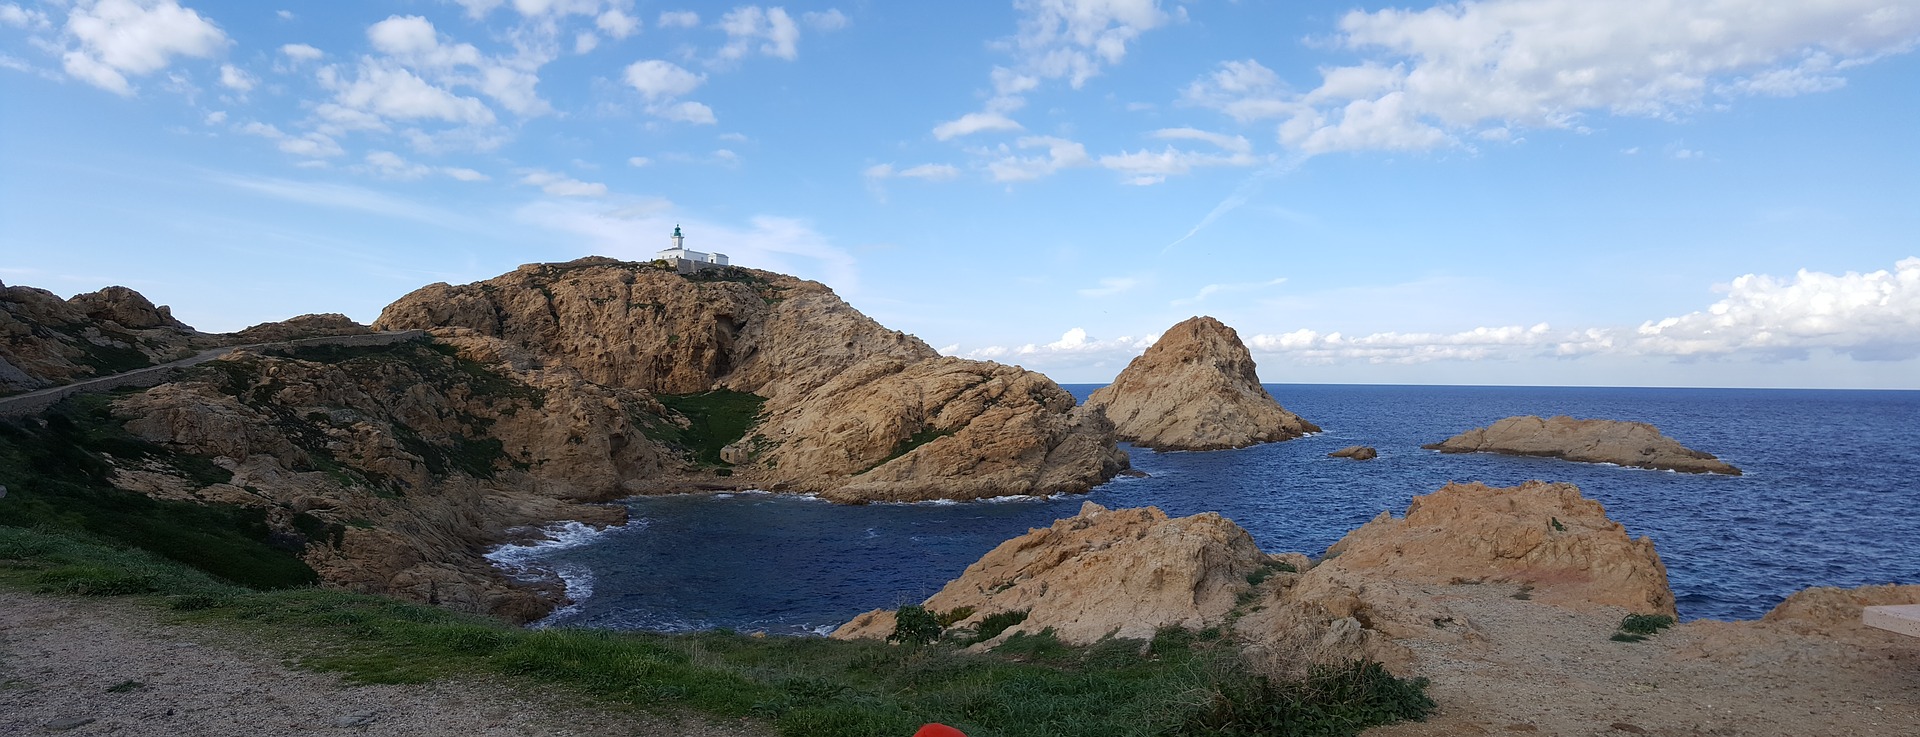 l’Ile-Rousse en Corse